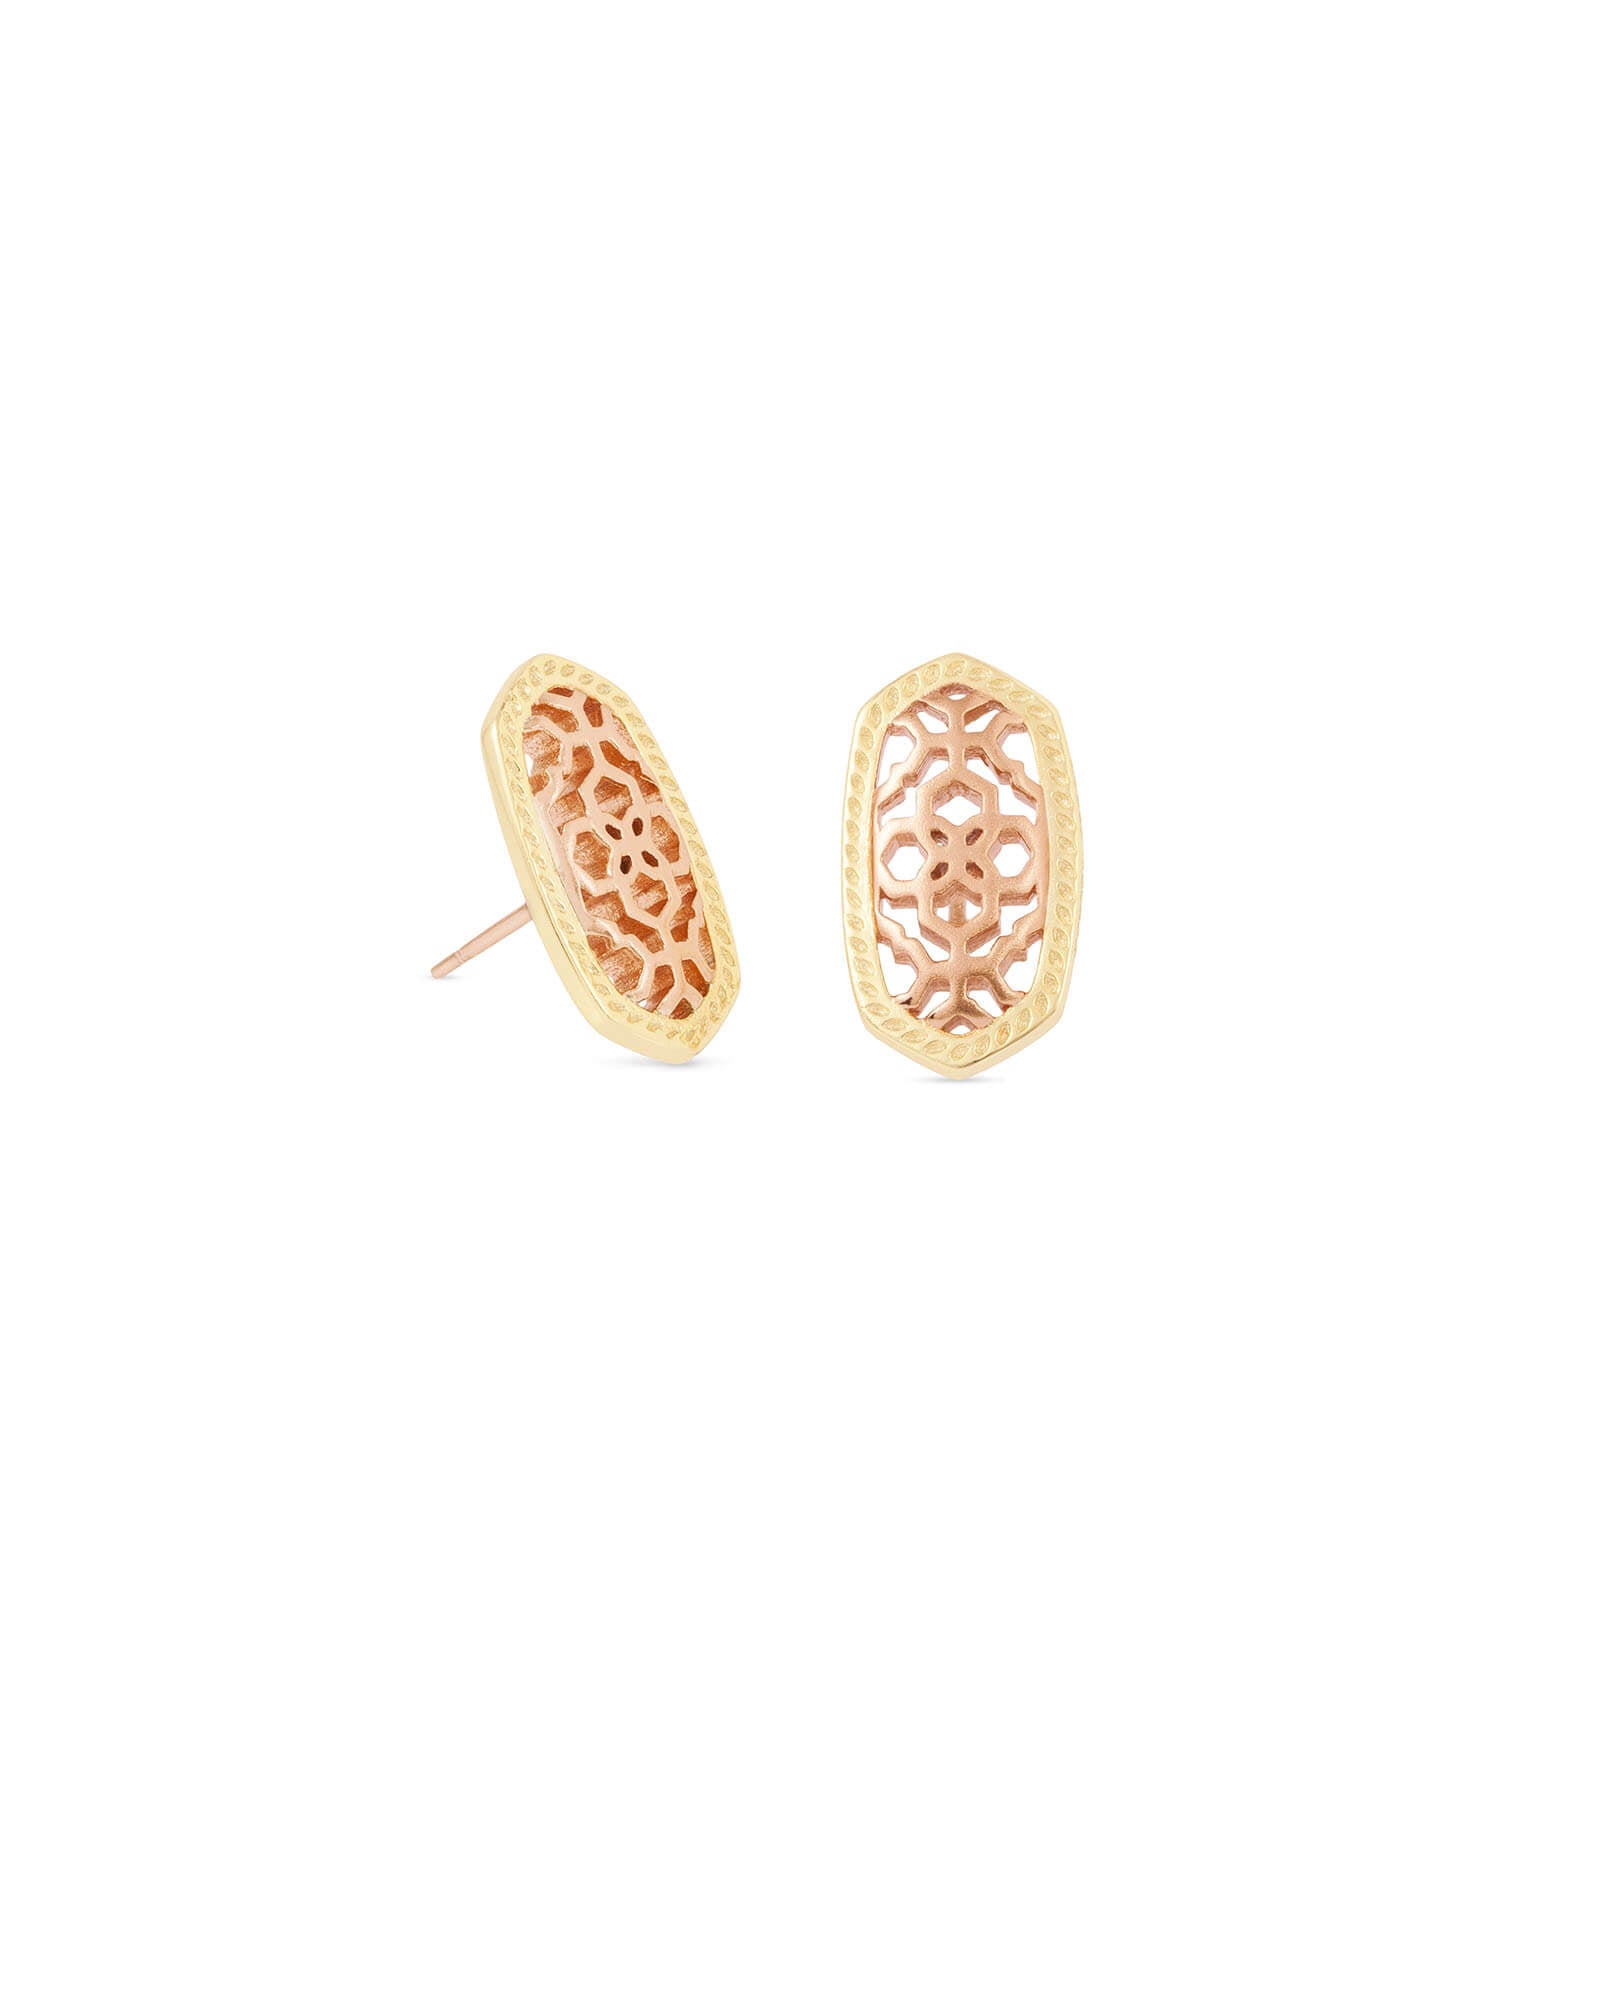 Kendra Scott Ellie Gold Earrings